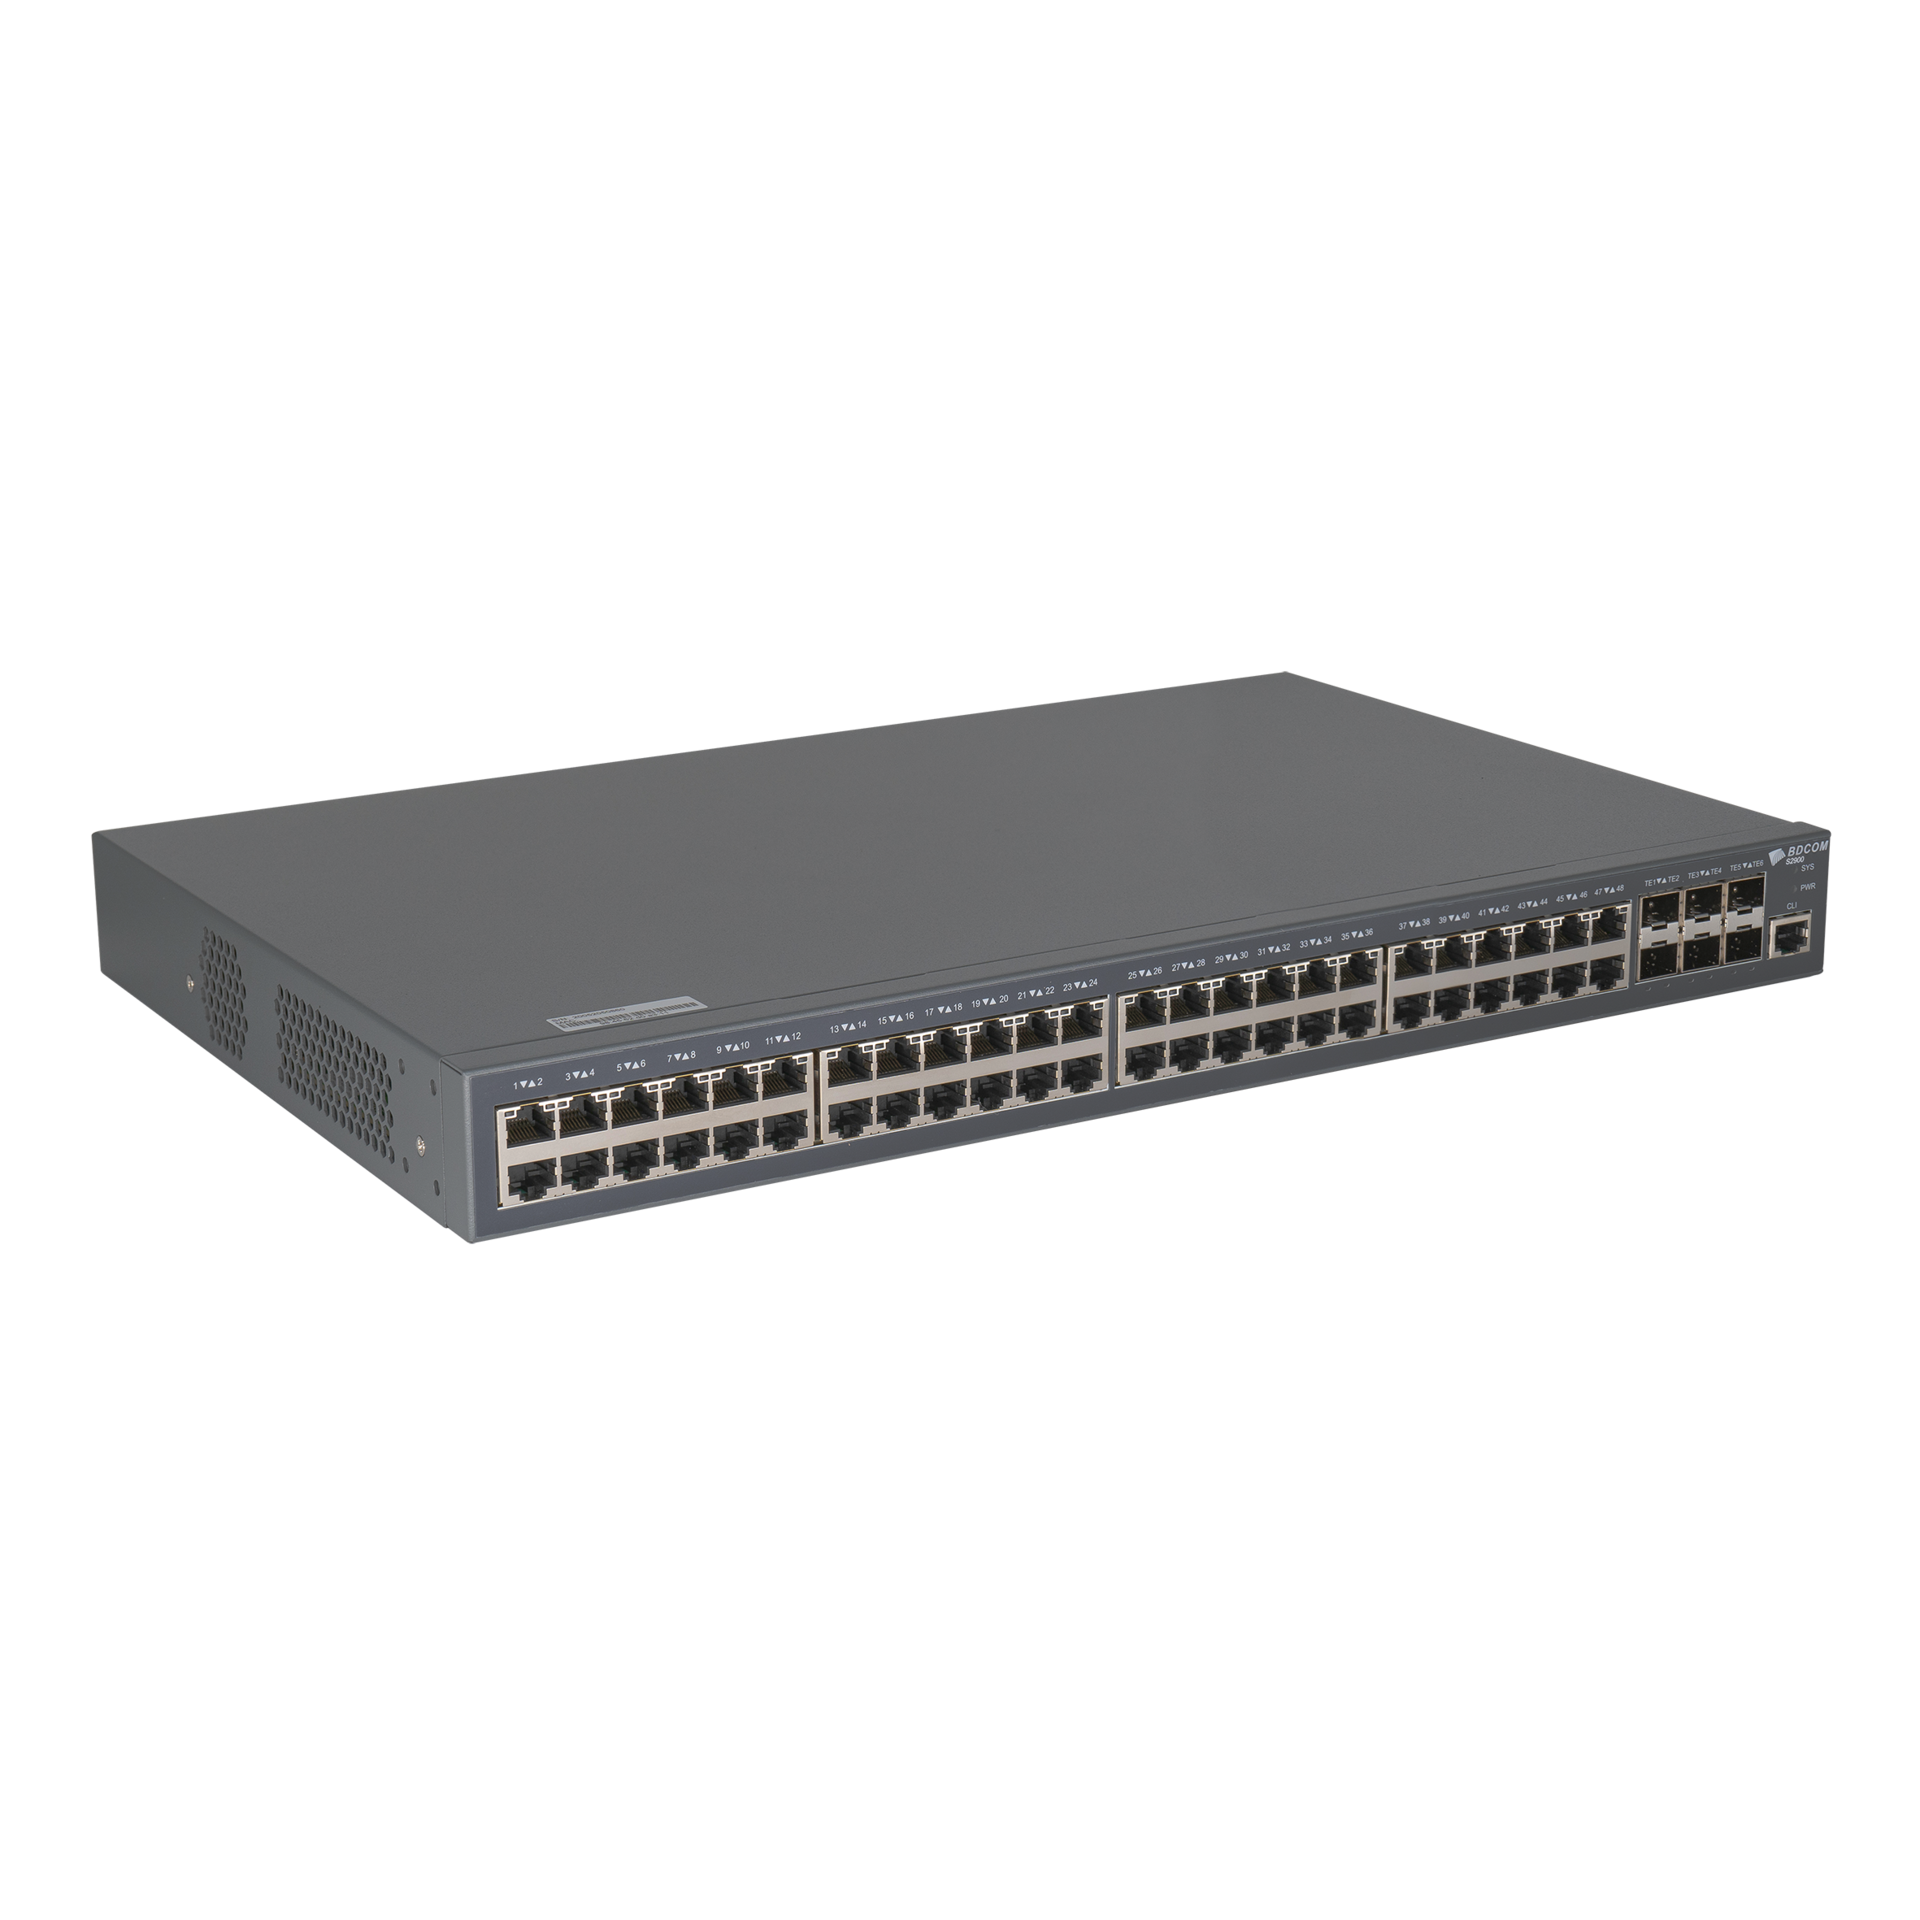 Управляемый коммутатор уровня 3 BDCOM S2900-48P6X, 48x 10/100/1000BaseT PoE 802.3af/at до 740W, 4x 1/10GE SFP+, 220VAC + 44-57VDC